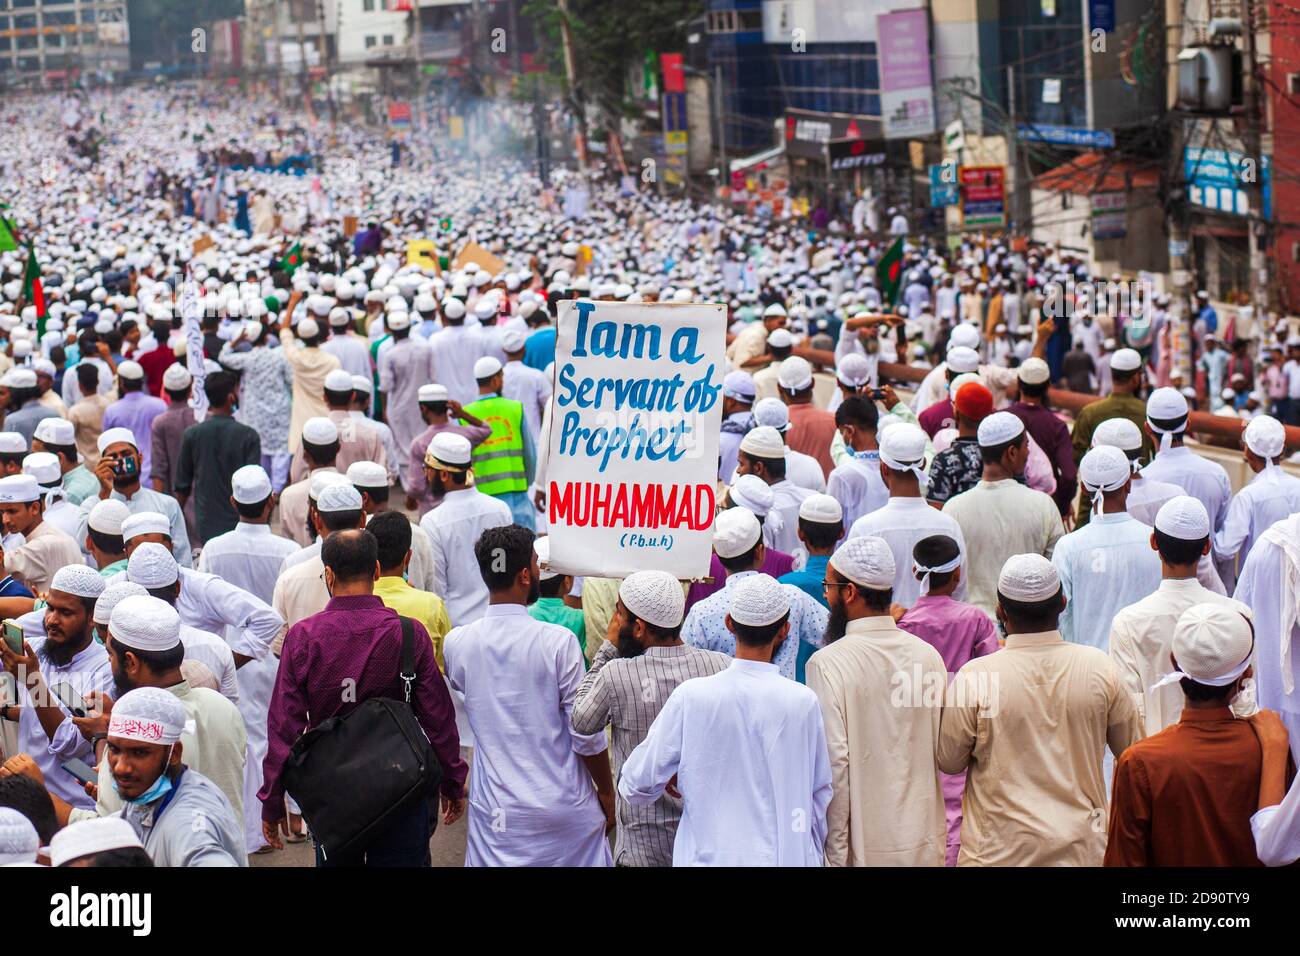 Ein Aktivist des Hefazat-e-Islam Bangladesh zeigt ein Plakat während des Anti-Frankreich-protestmarsches in Dhaka.Tausende Hefazat-e-Islam Bangladesh Führer und Aktivisten nehmen an einem Anti-Frankreich-protestmarsch Teil, der zum Boykott französischer Produkte aufruft und den französischen Präsidenten Emmanuel Macron für seine Bemerkungen anprangert ‘nicht aufzugeben Cartoons Darstellung Propheten Mohammed’. Hefazat-e-Islam Bangladesch hat der Regierung ein 24-Stunden-Ultimatum zur Schließung der französischen Botschaft in Dhaka gestellt. Stockfoto